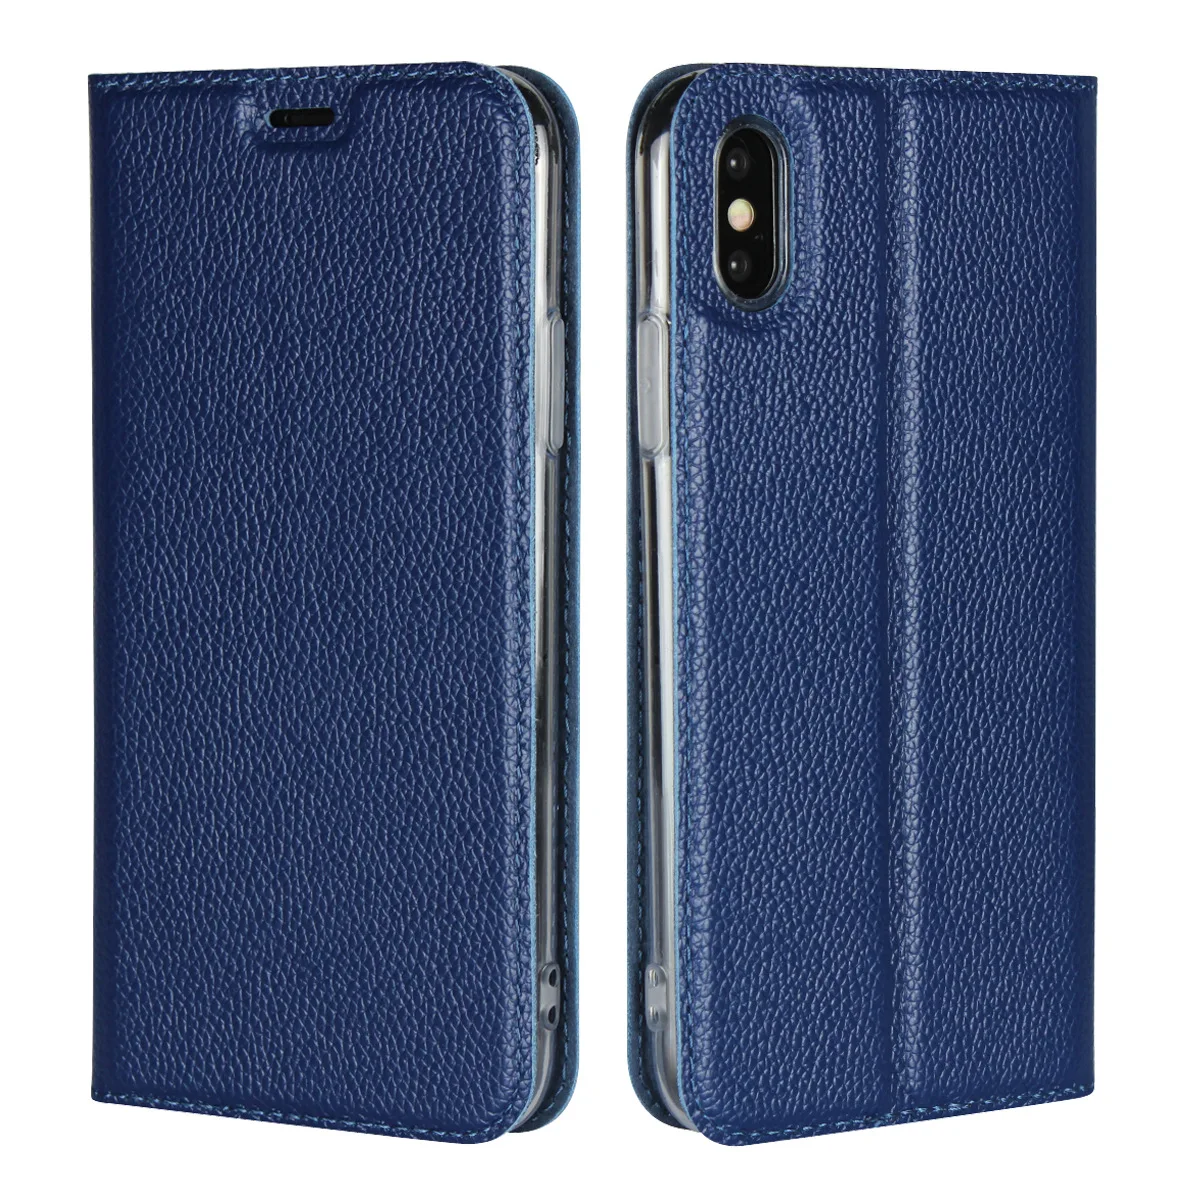 Роскошный чехол-книжка из натуральной кожи с зернистой текстурой личи для Iphone X XS Max XR 7 8 6S Plus 5S SE чехол s Stand - Цвет: Синий